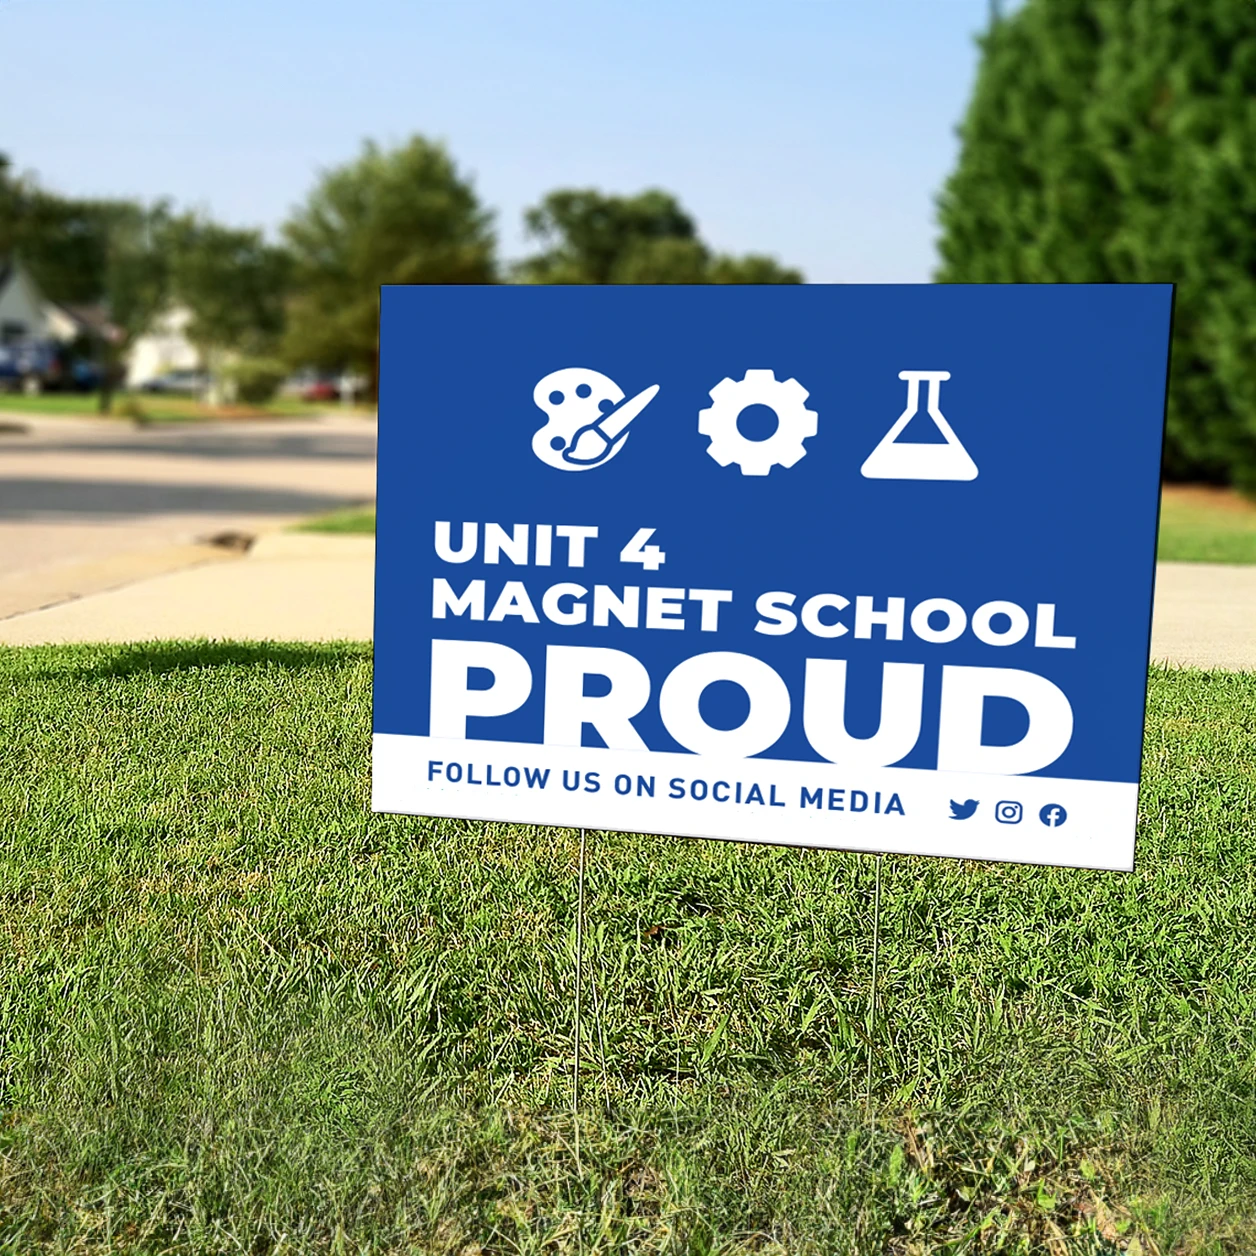 Unit 4 magnet school proud yard sign.